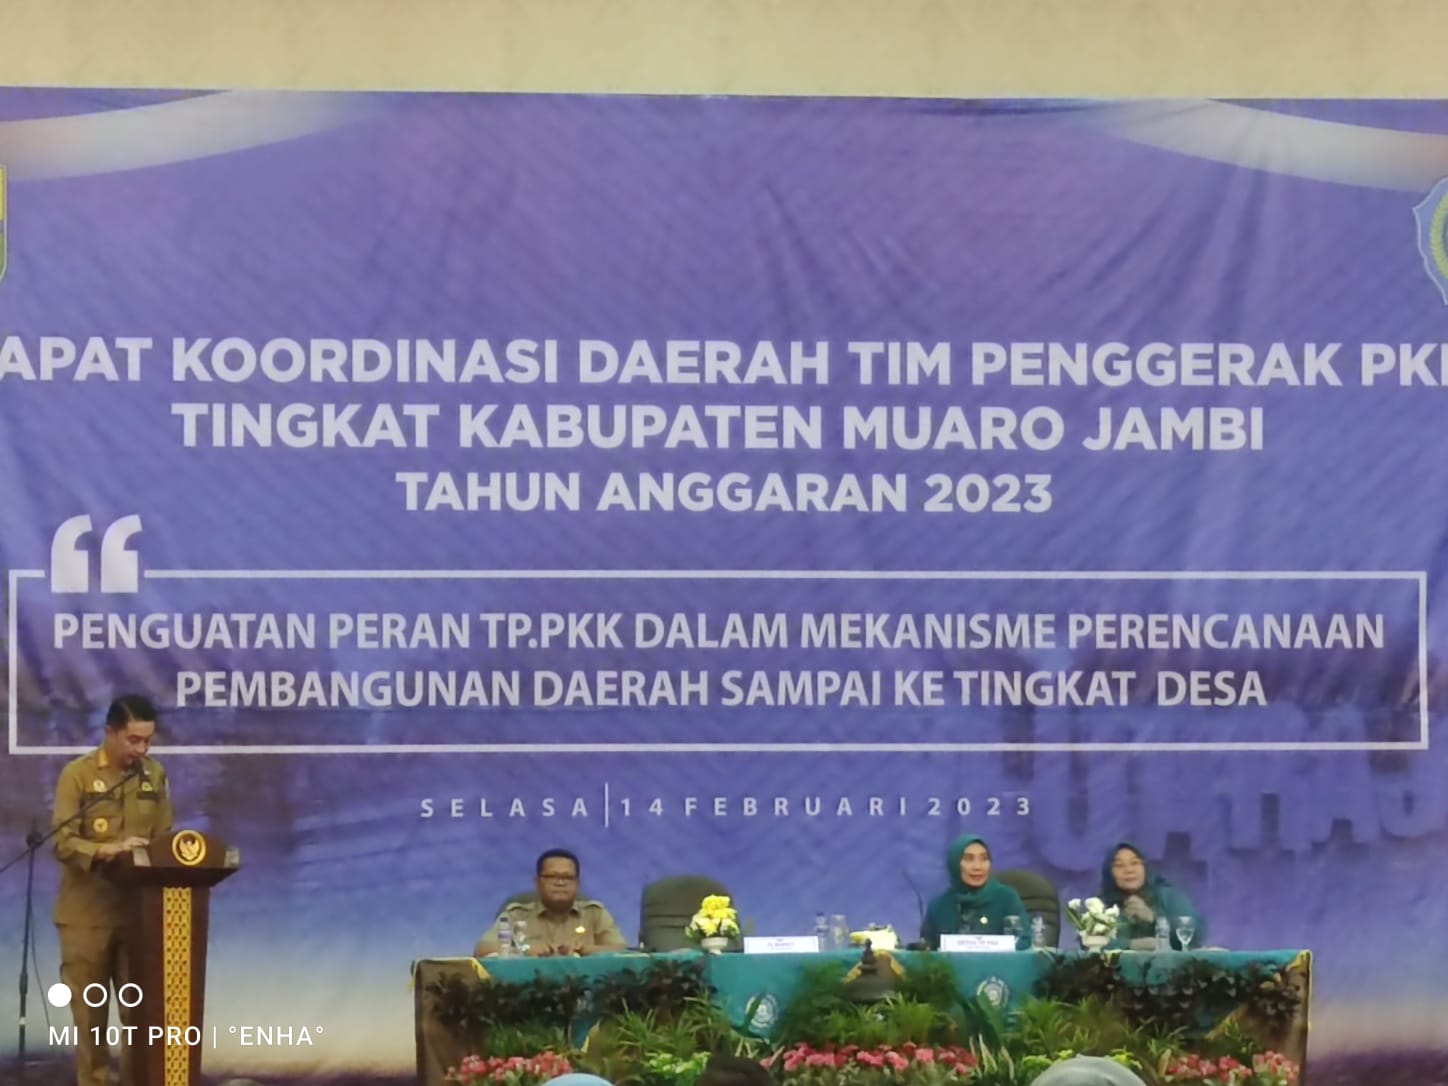 rapat-koordinasi-daerah-tim-penggerak-pkk-kabupaten-muaro-jambi-tahun-2023